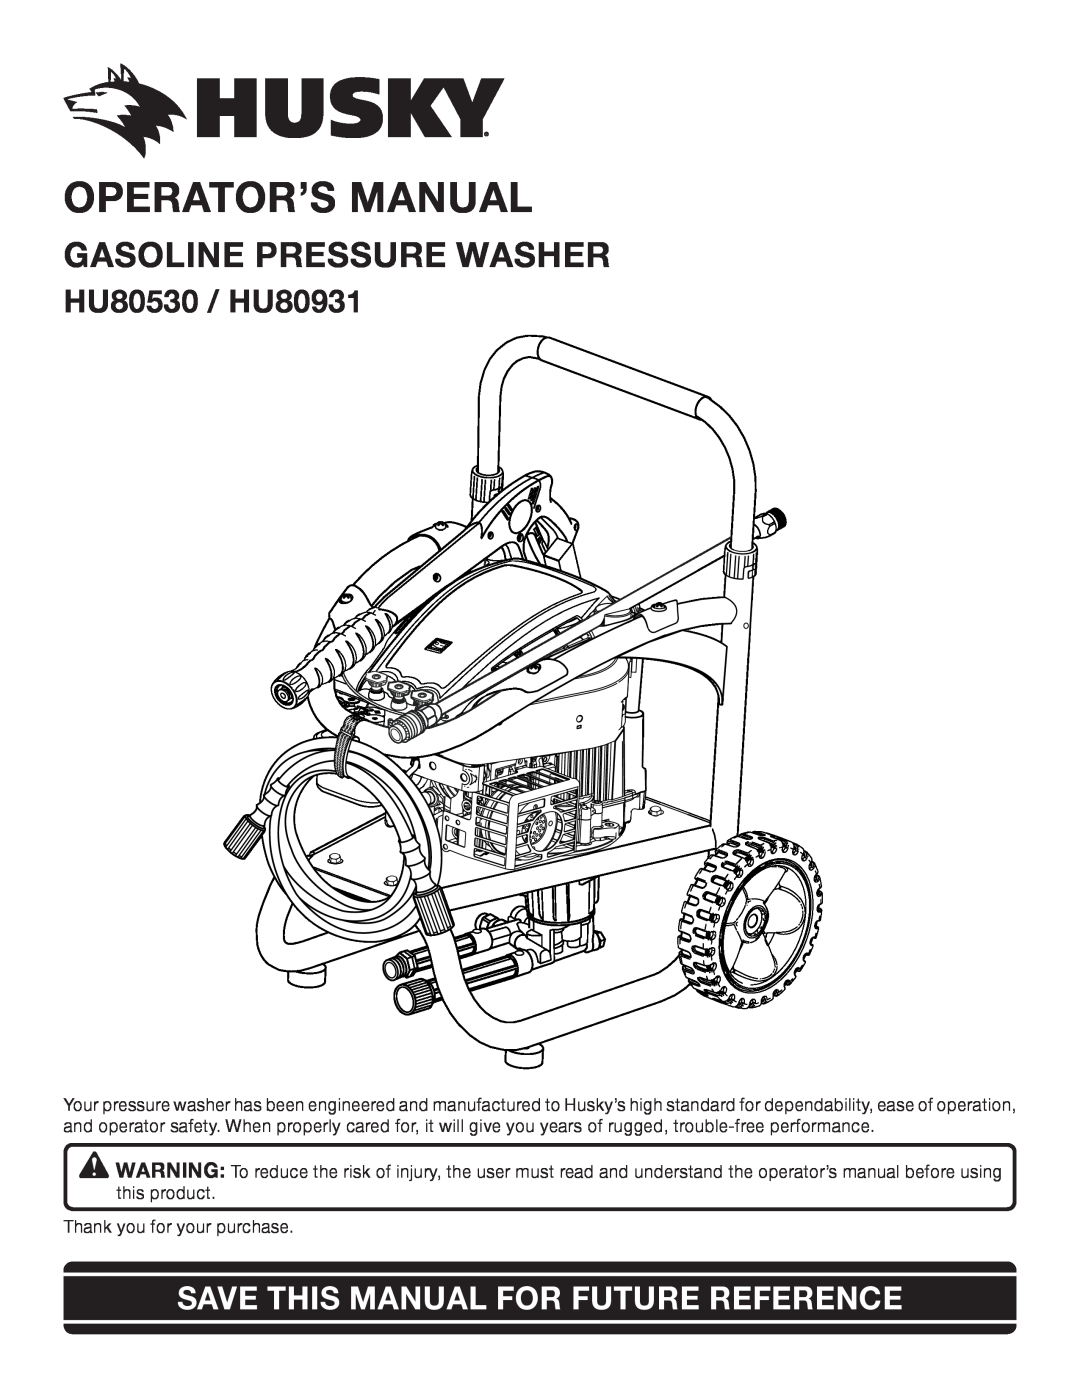 Briggs & Stratton manual Operator’S Manual, Gasoline Pressure Washer, HU80530 / HU80931 